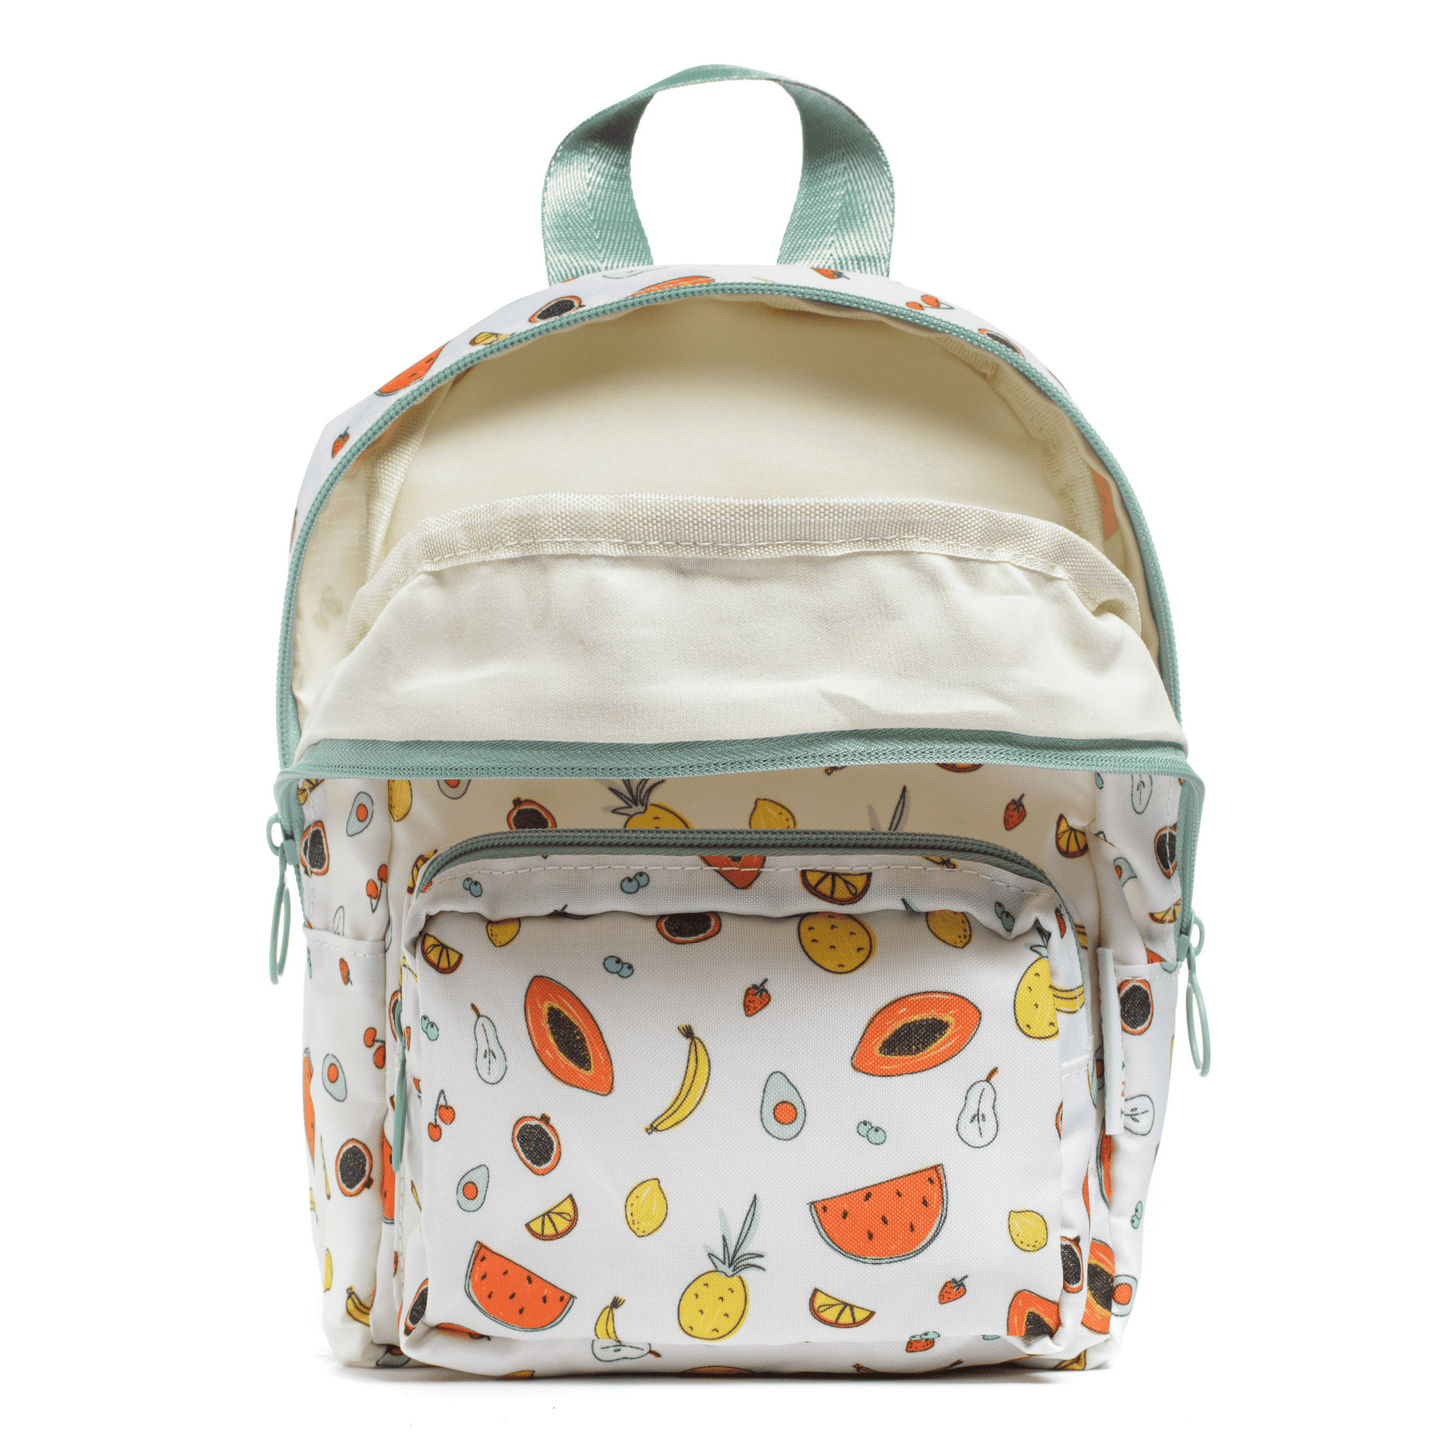 Clementine mini backpack